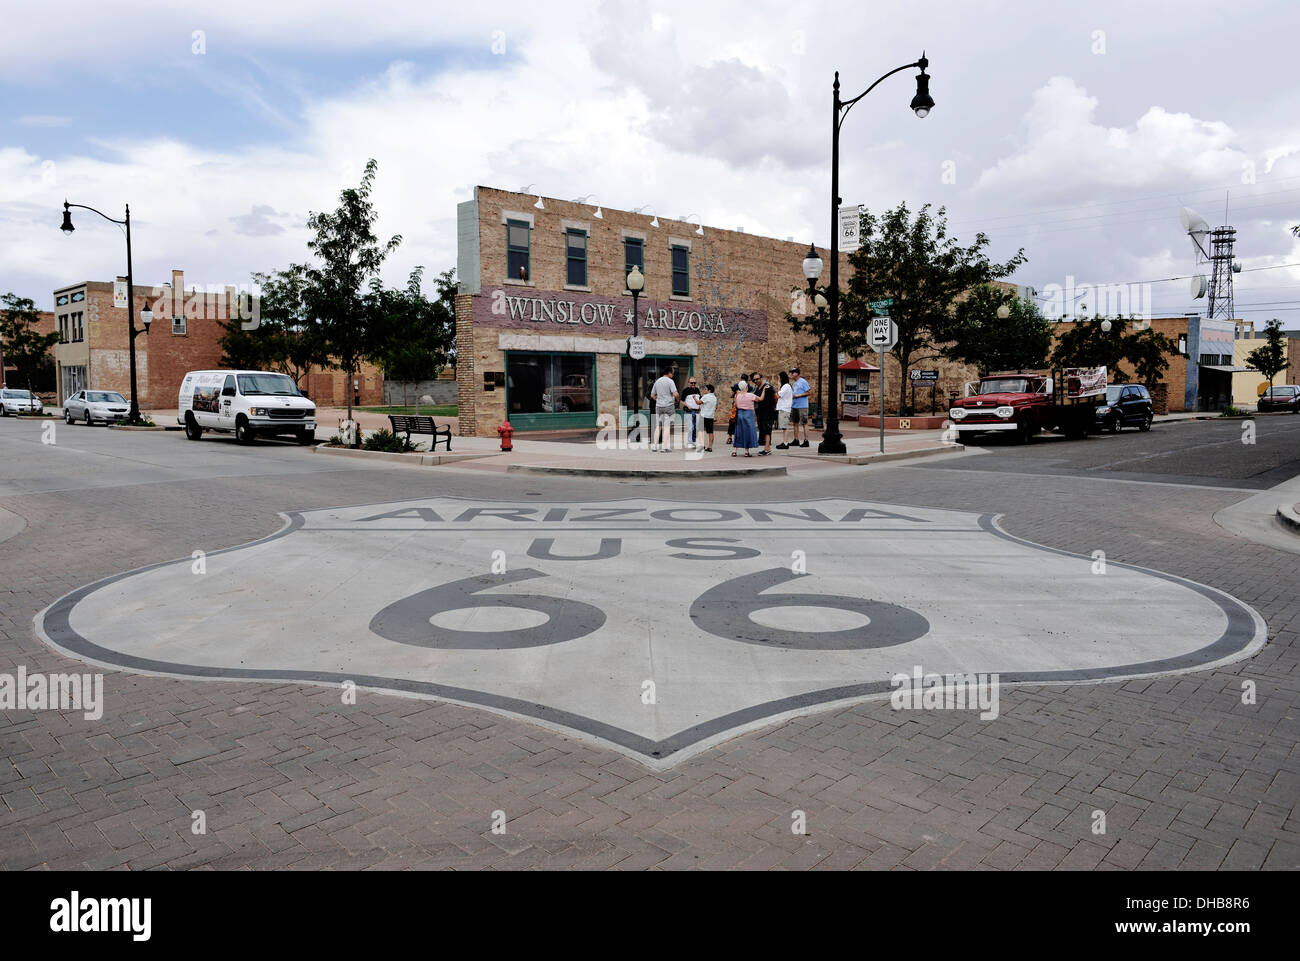 L'angolo di Winslow, Arizona come reso famoso attraverso le aquile' 'Take it easy' canzone.Route 66, STATI UNITI D'AMERICA. Foto Stock